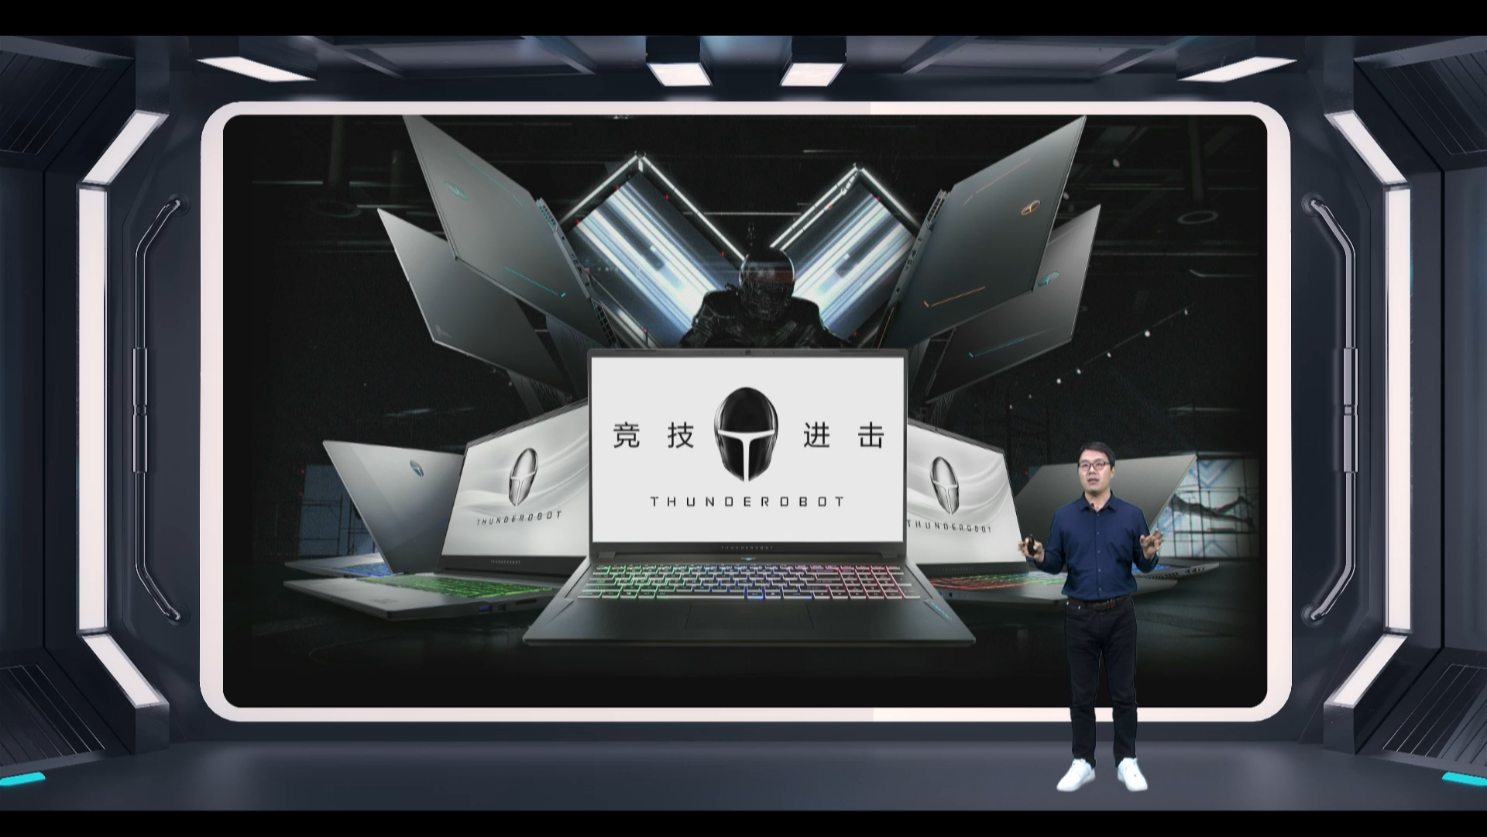 雷神 5.11 新品发布会举行 官宣 MLXG、发布电竞全场景系列产品